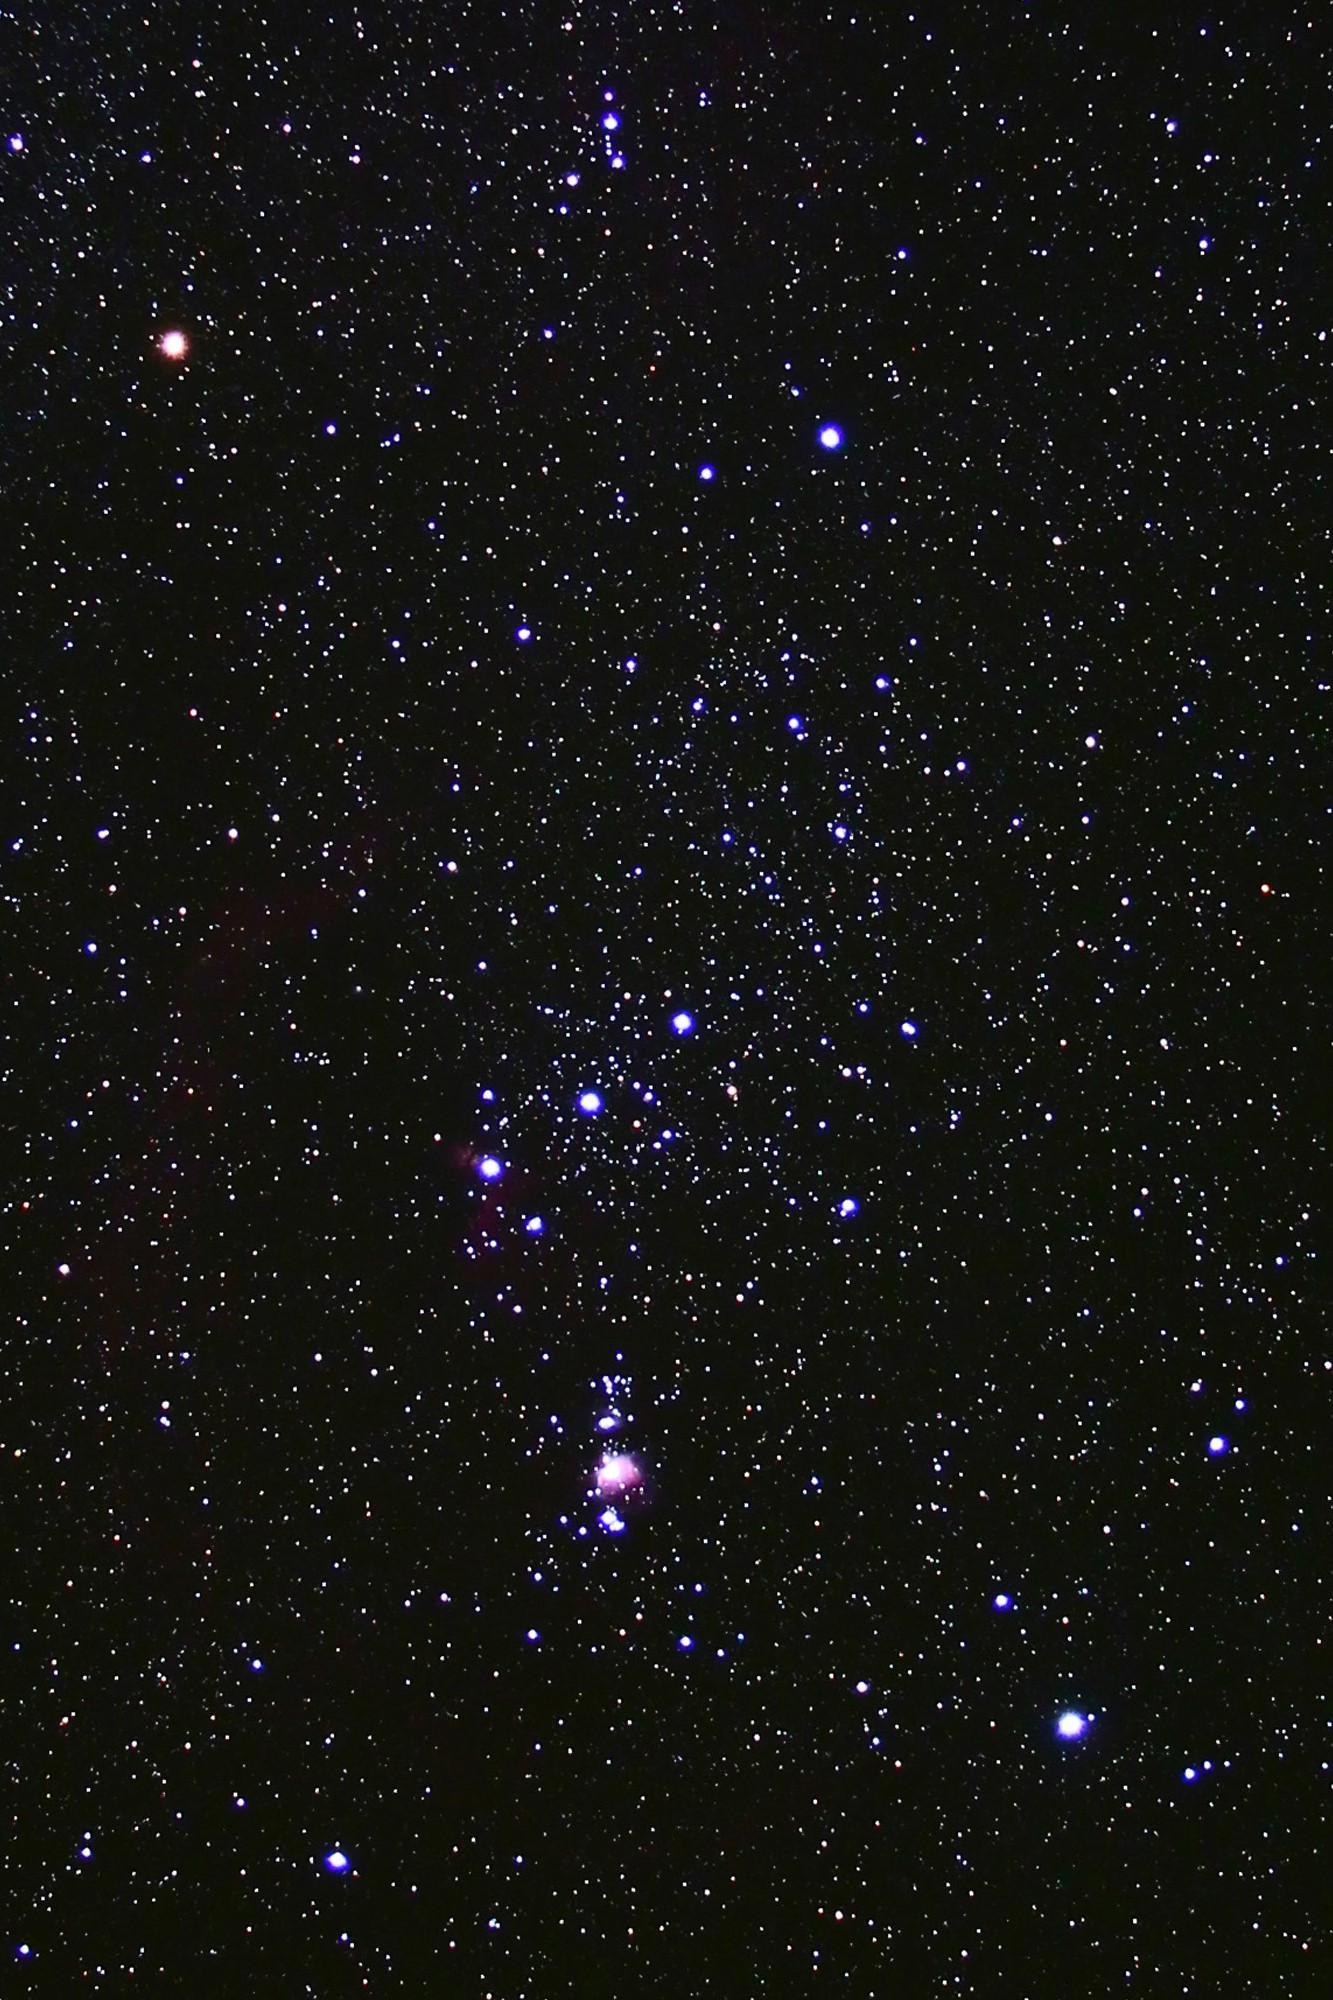 Az Orion csillagkép két legfényesebb csillaga közül a Betelgeuze (bal oldalon fent) vörösen ragyog, mivel hőmérséklete alacsony, míg a Rigel (jobb oldalon lent) forró, ezért kékesfehéren világít.